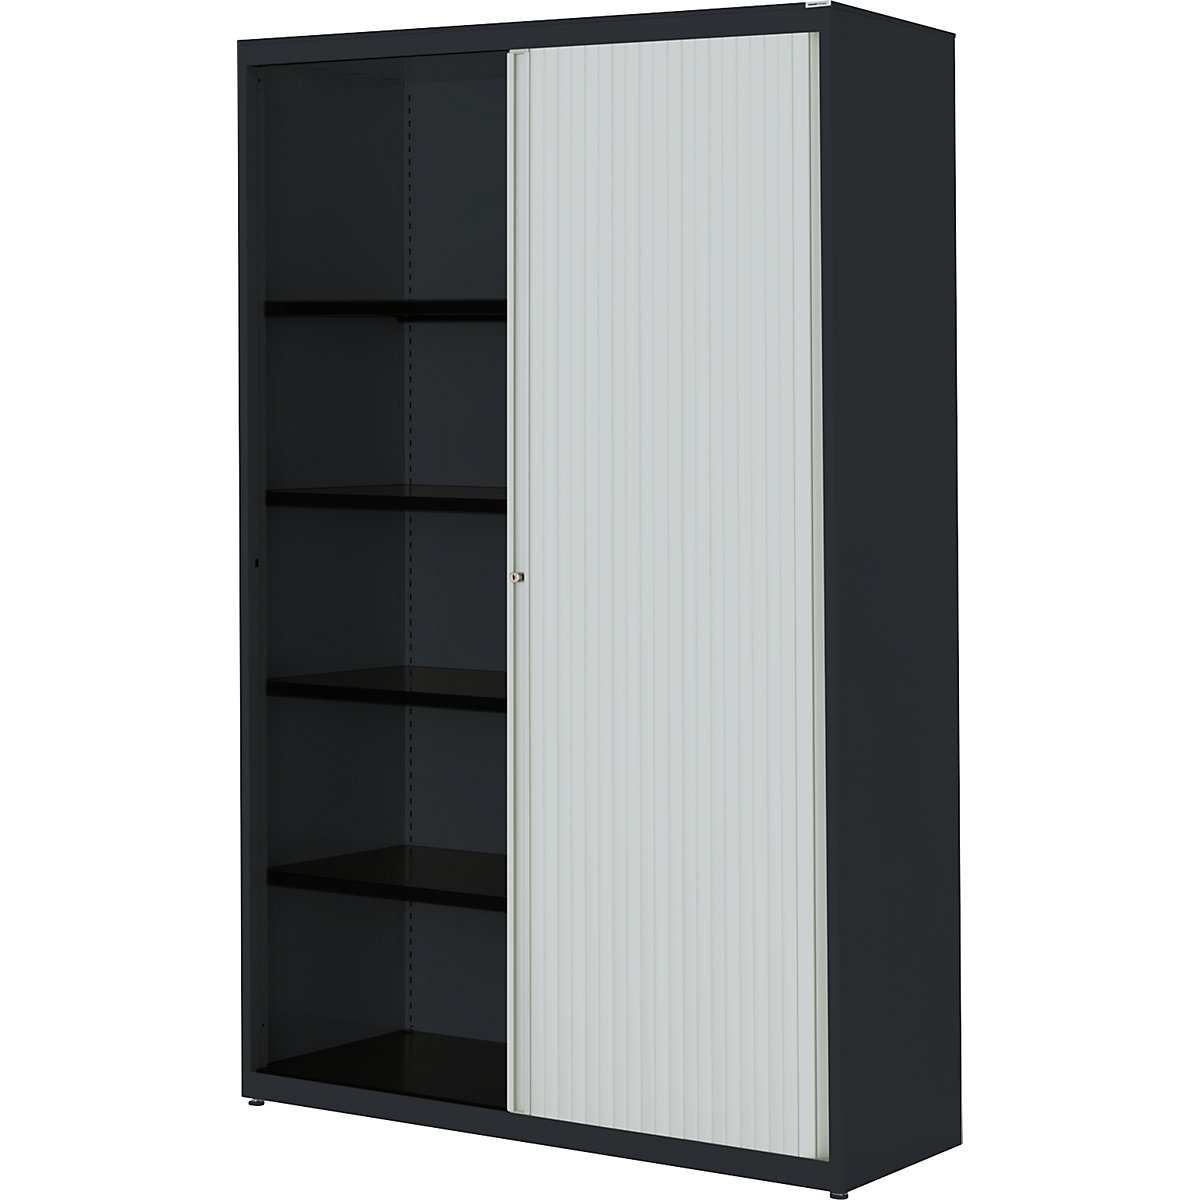 Horizontal roller shutter cupboard – mauser, HxWxD 1956 x 1200 x 432 mm, steel plate, 4 shelves, charcoal / light grey / charcoal-2